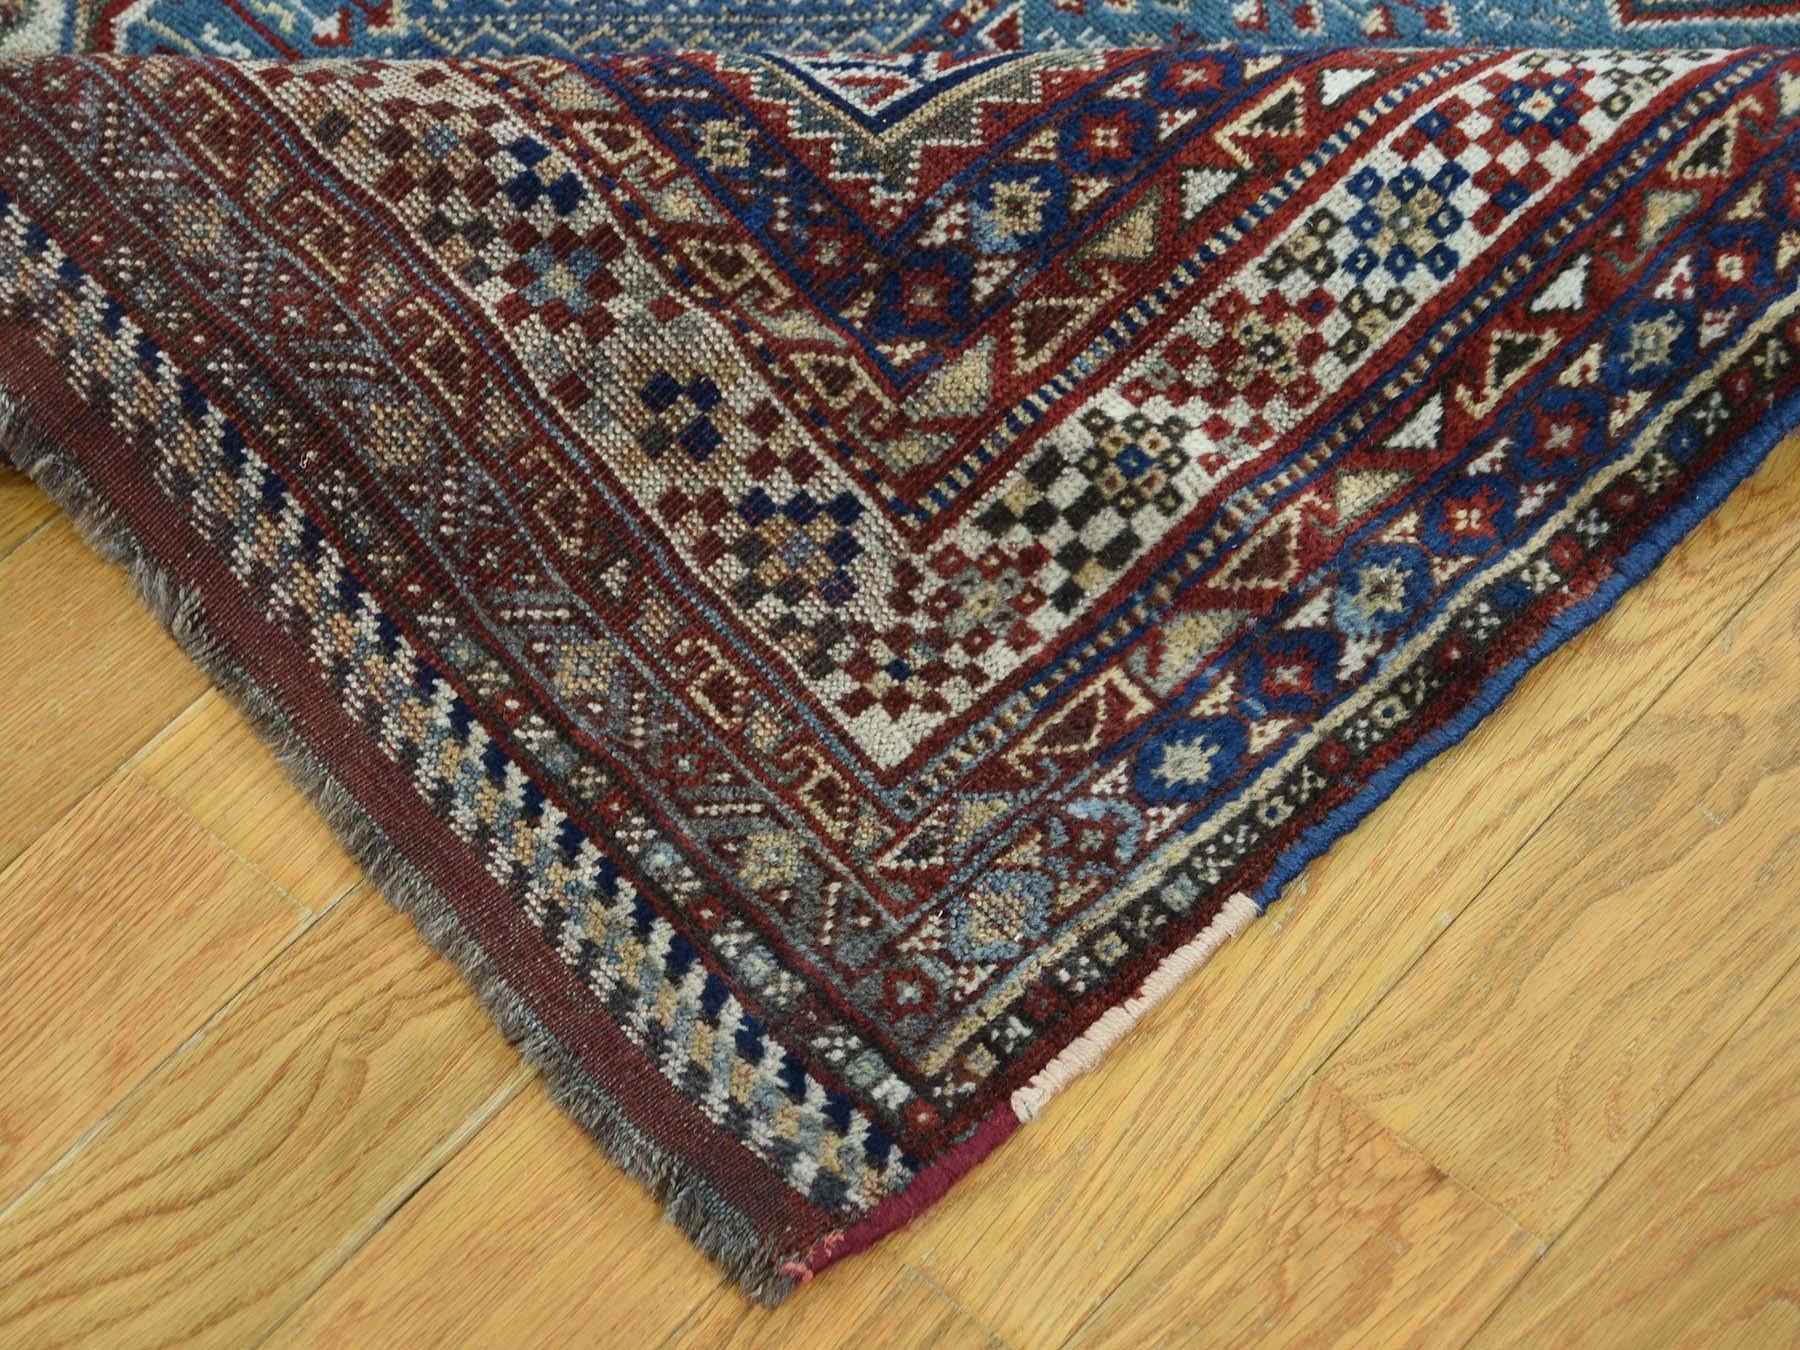 Wool 1900 Antique Persian Qashqai Rug, Exquisite Blue